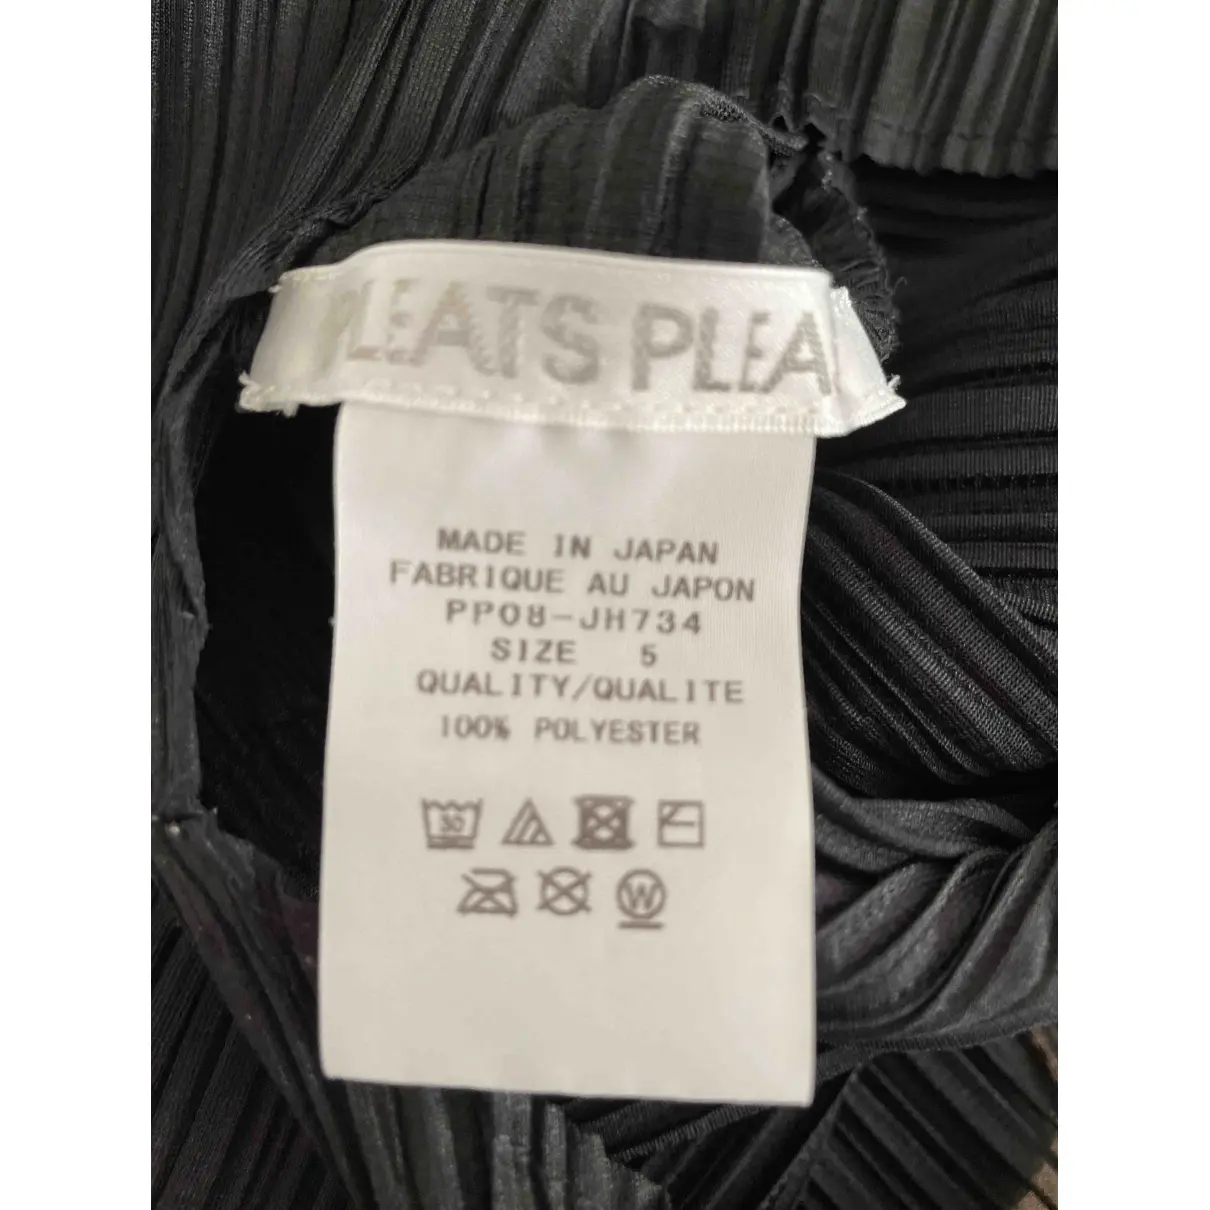 Buy Pleats Please Maxi dress online